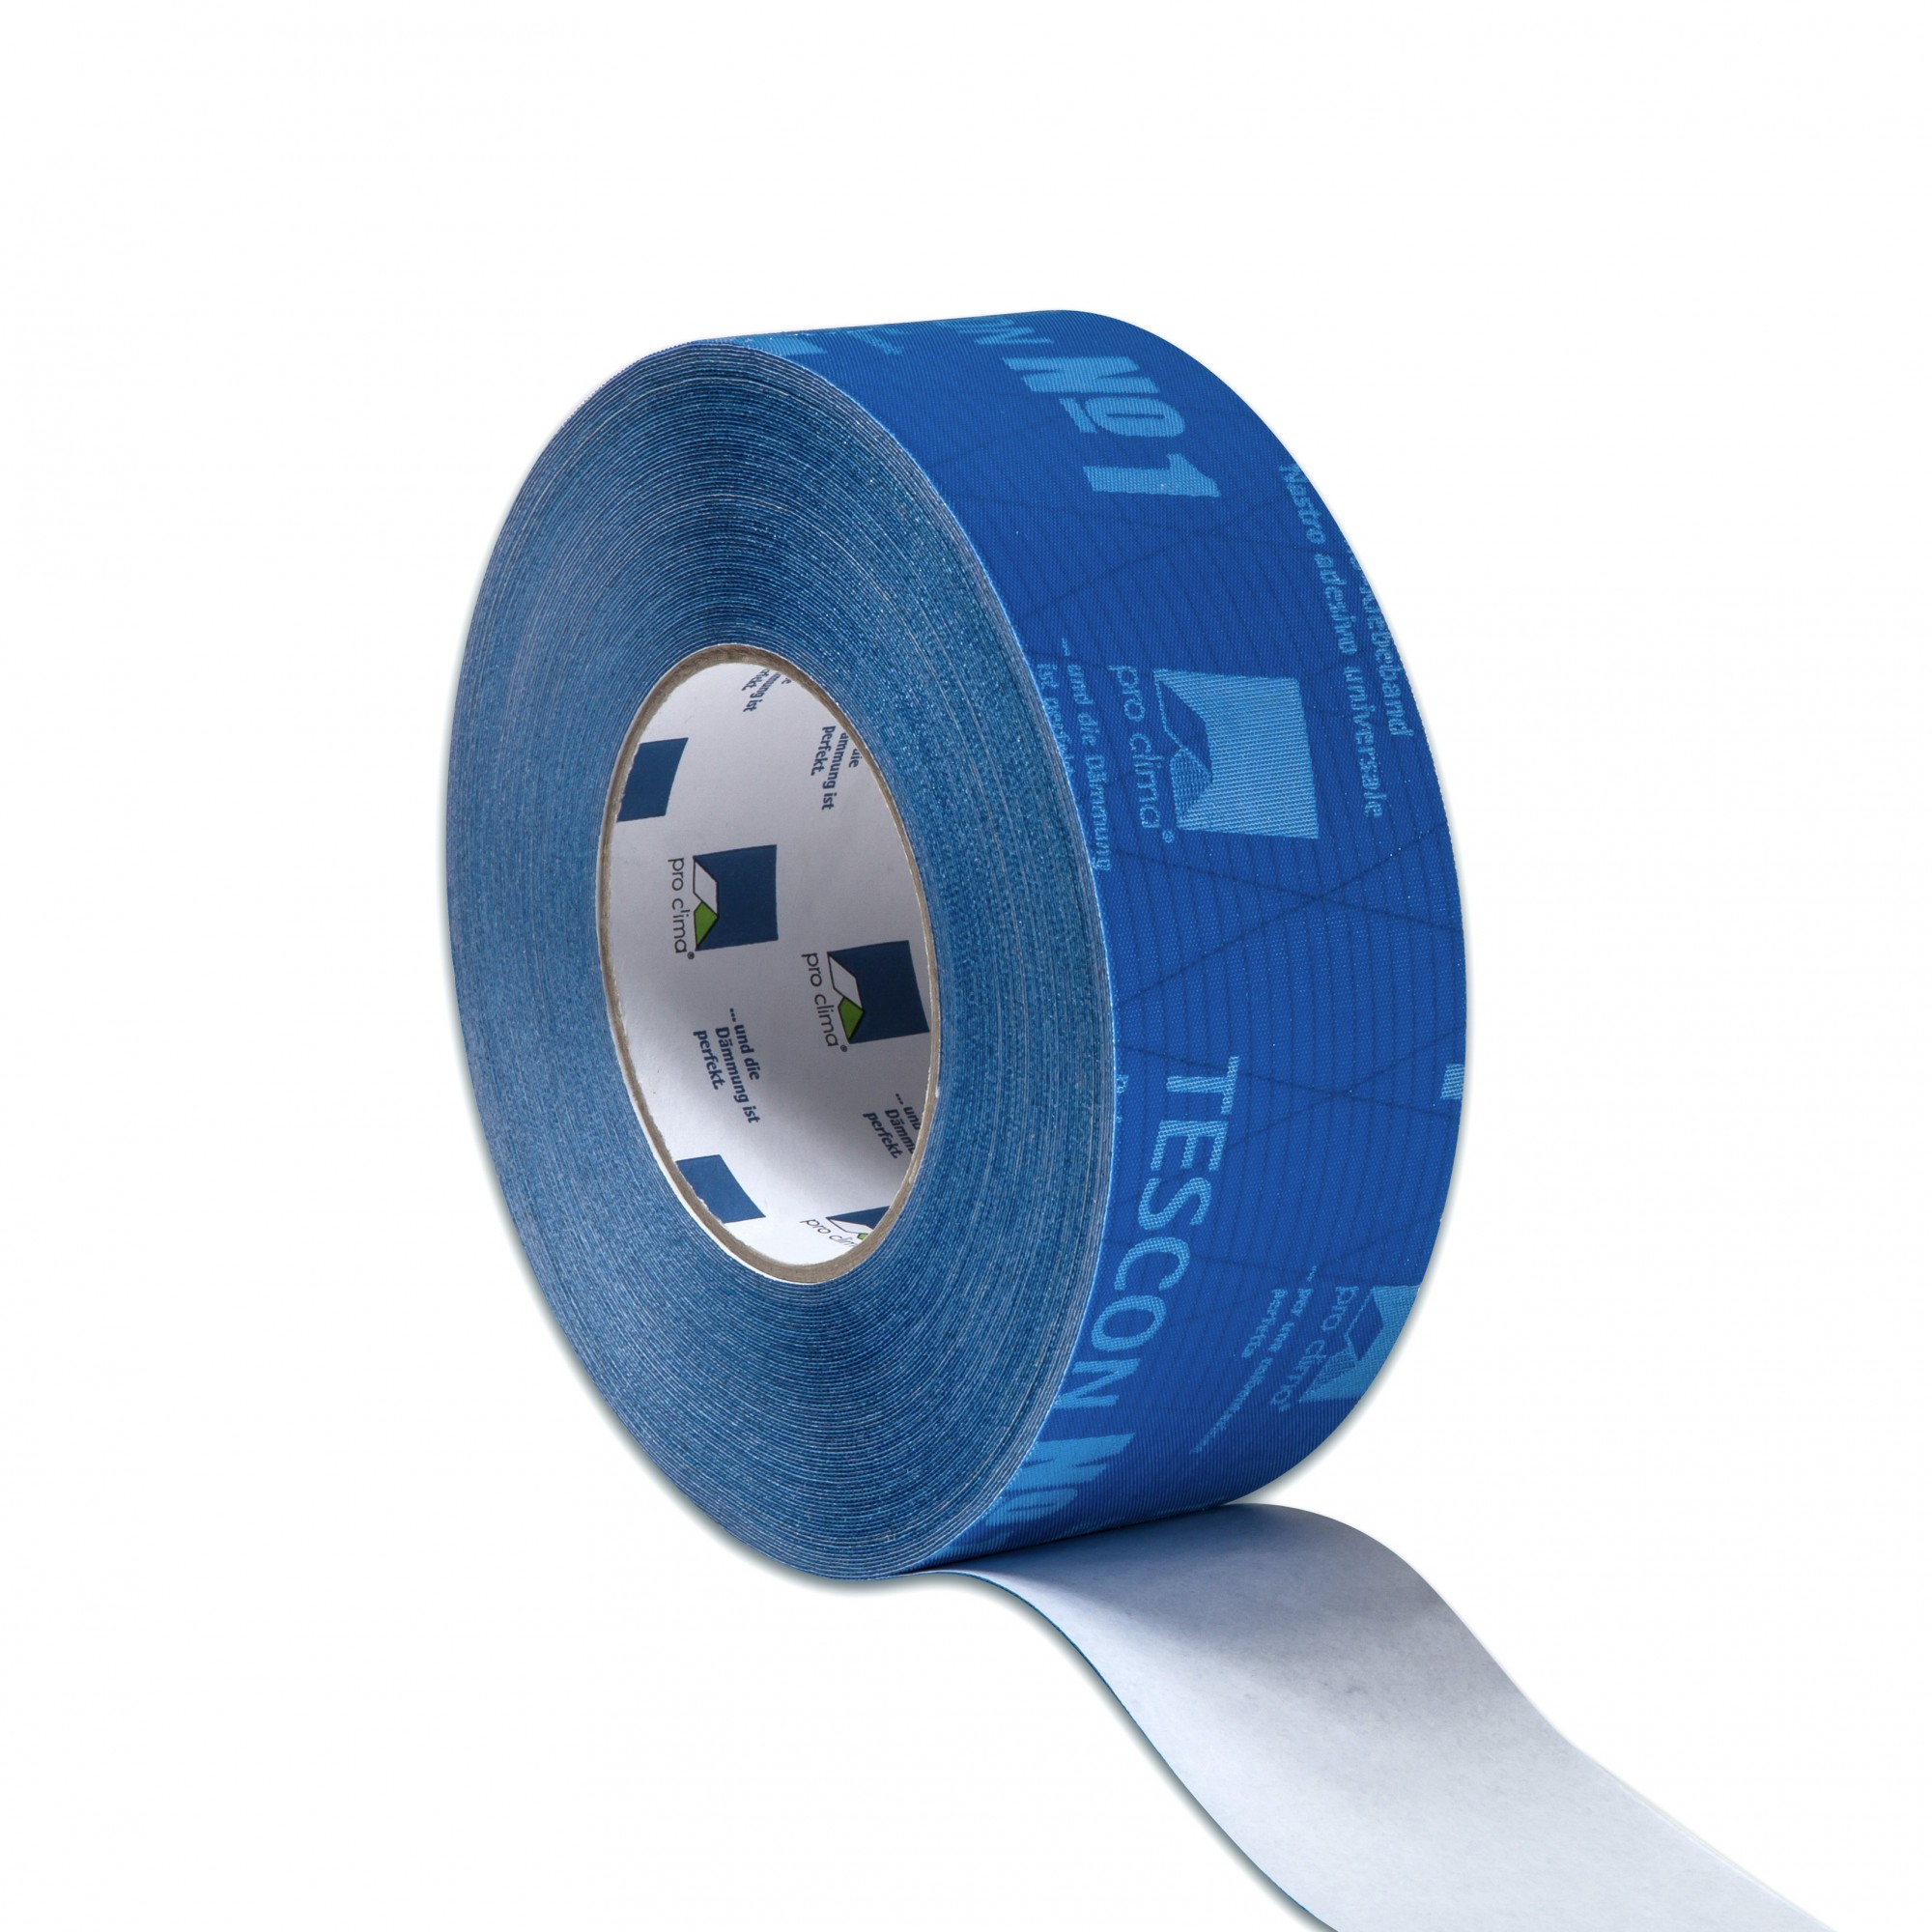 5 x Pro Clima Tescon No 1 Flexible multi-purpose airtight tape 30m